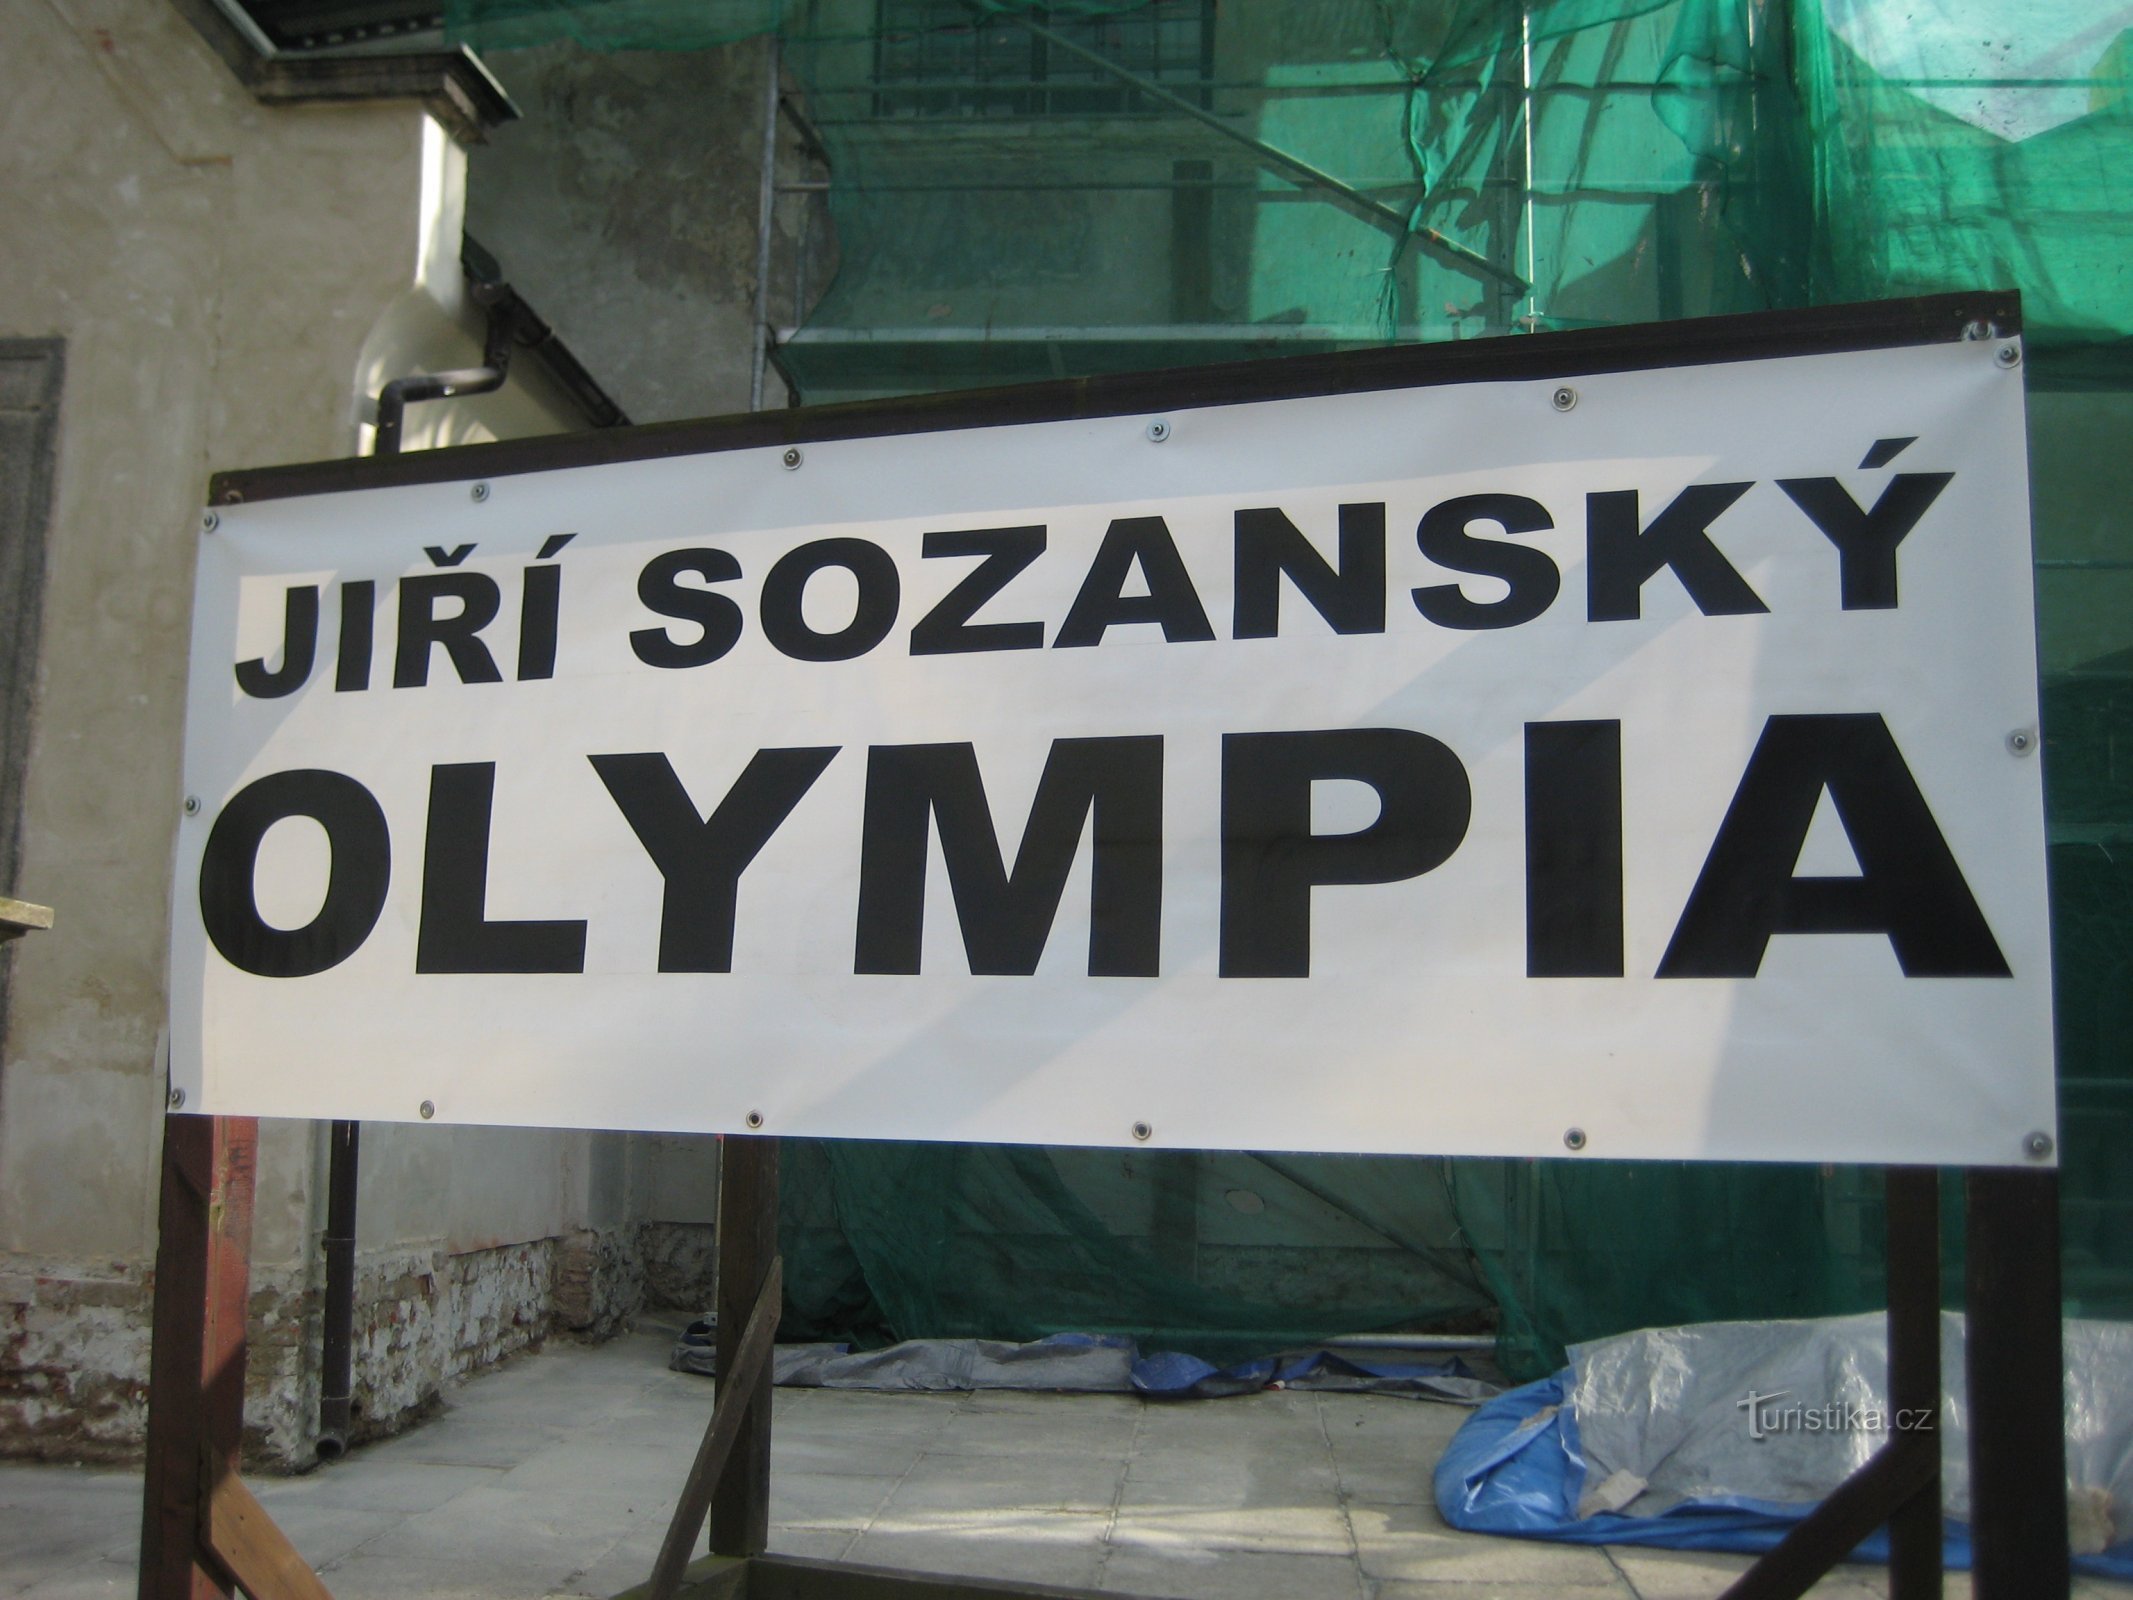 Exposição Jiří Sozanský - Olympia - Sokolov